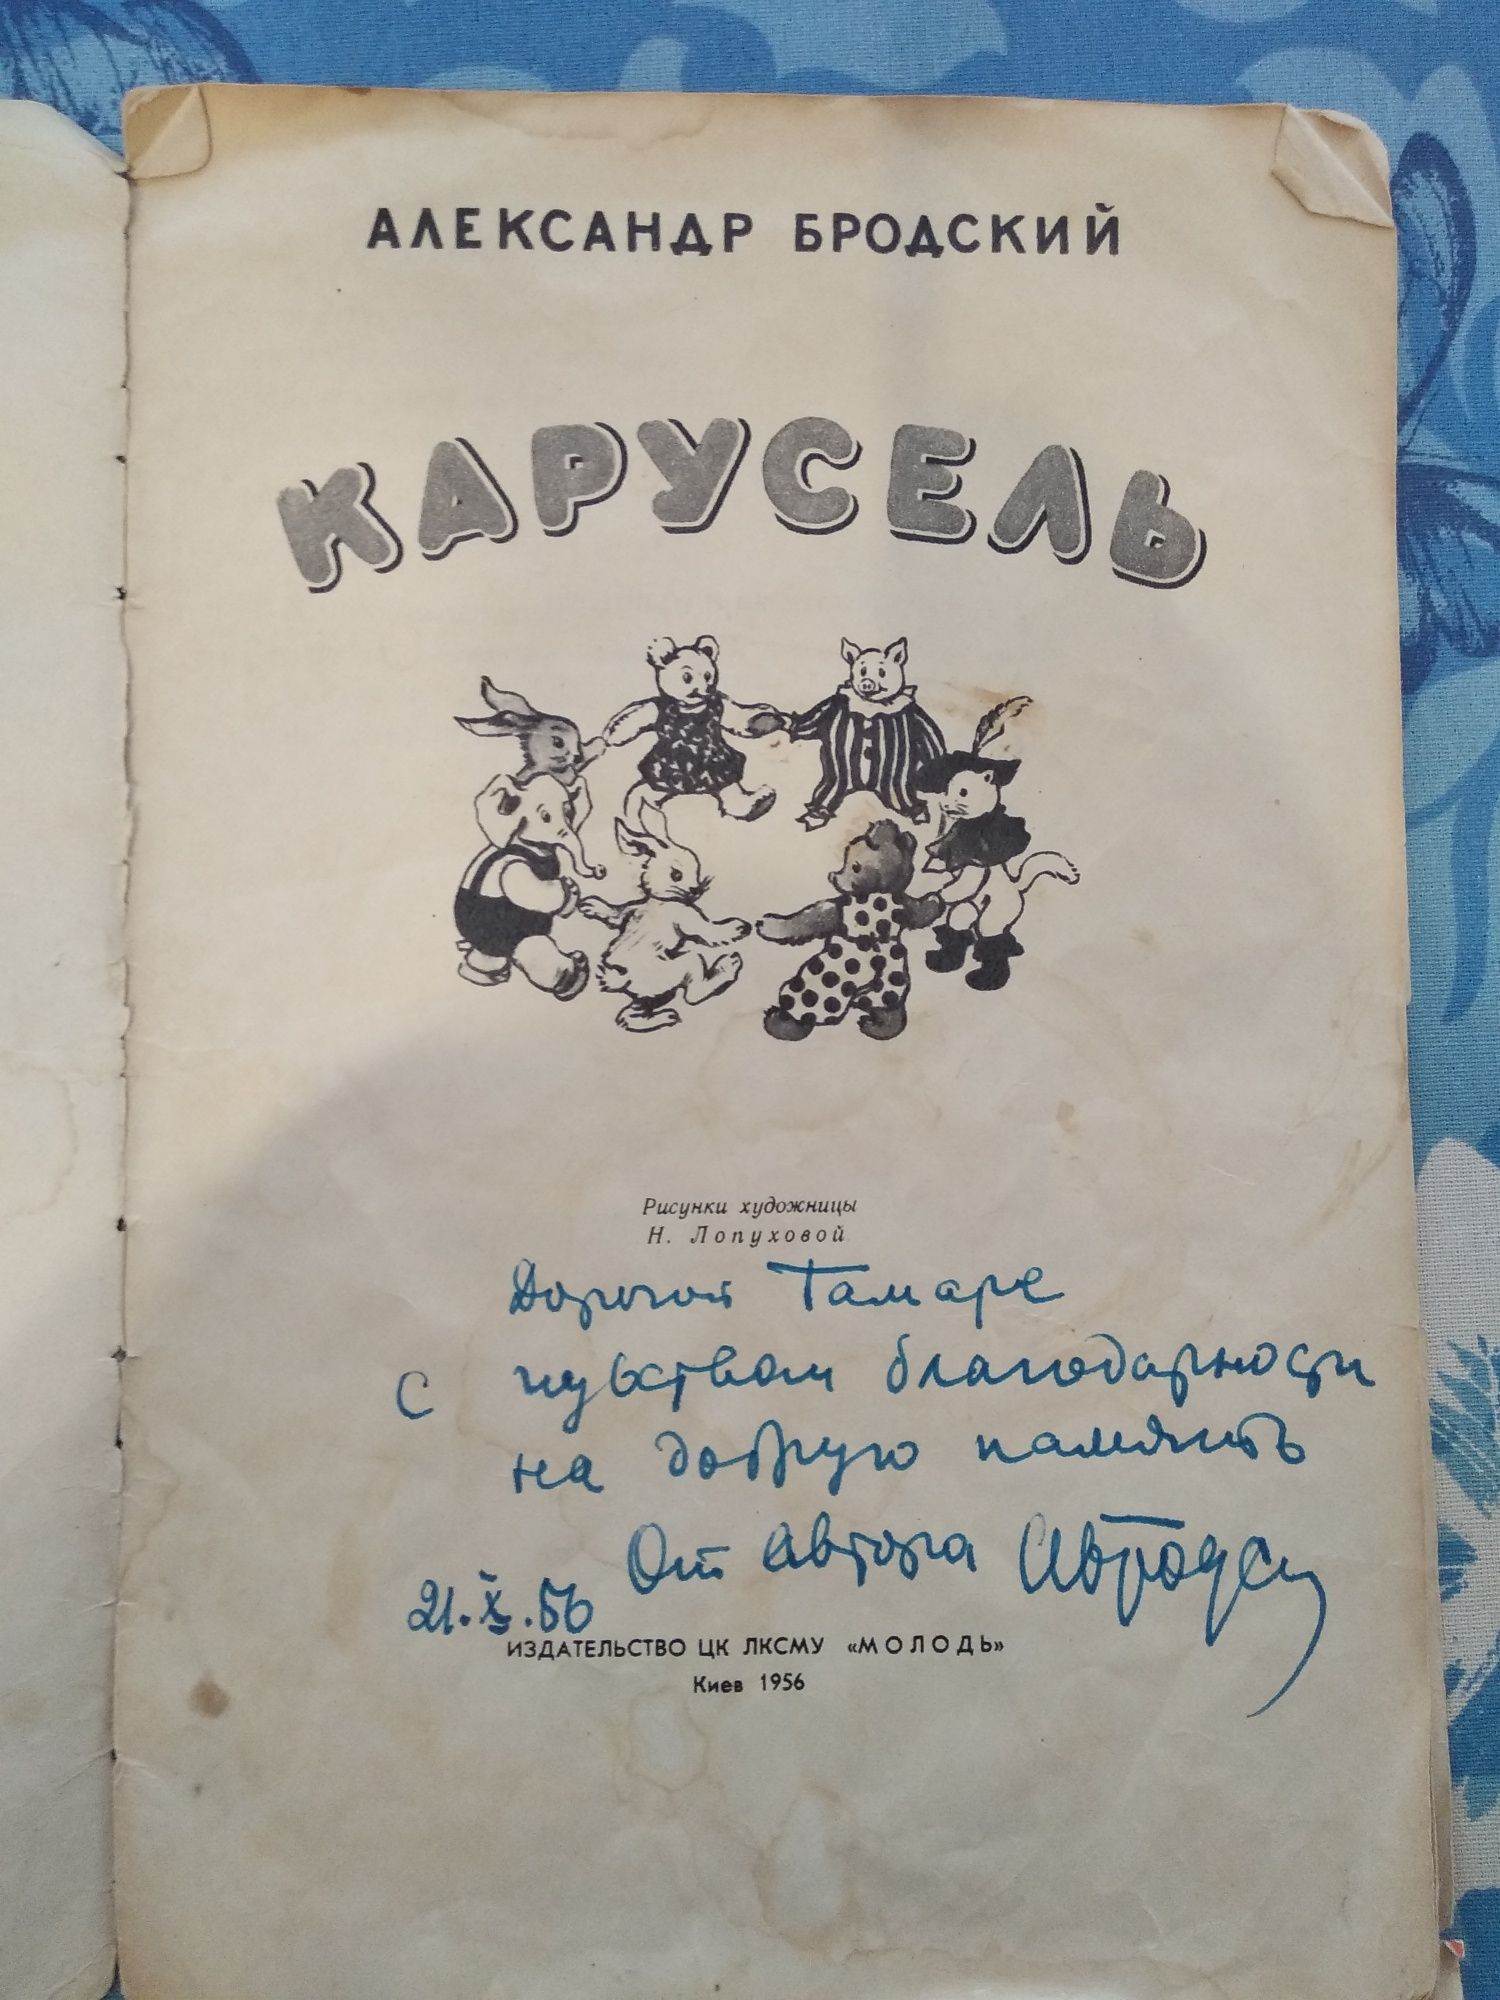 Редкая детская книга 1956 г. С подписью автора из своей коллекции